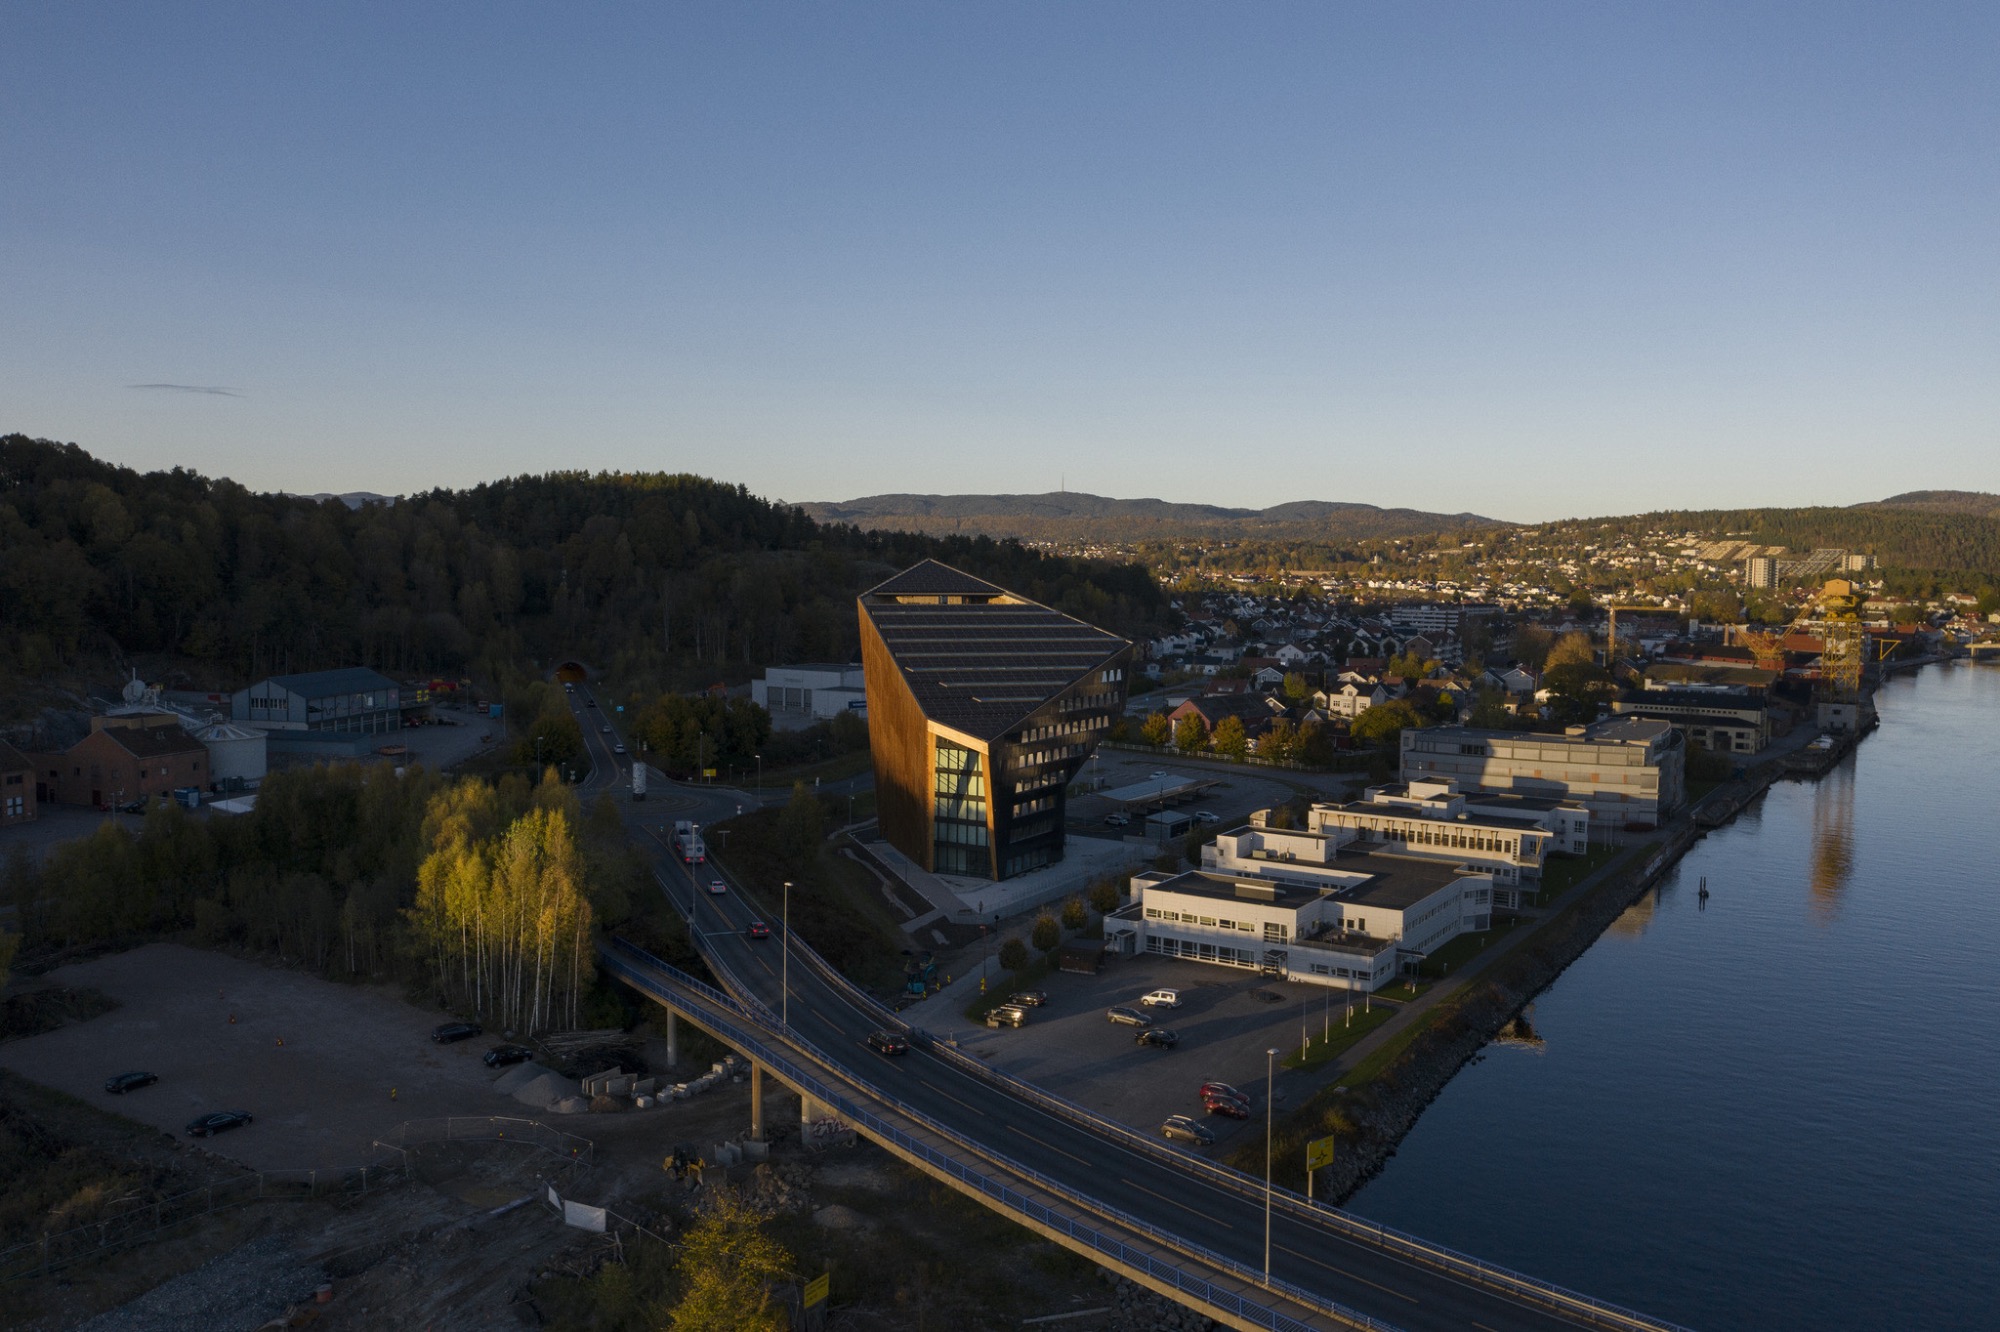 Novinka ze série energeticky pozitivních budov od Snøhetta se jmenuje Powerhouse Telemark